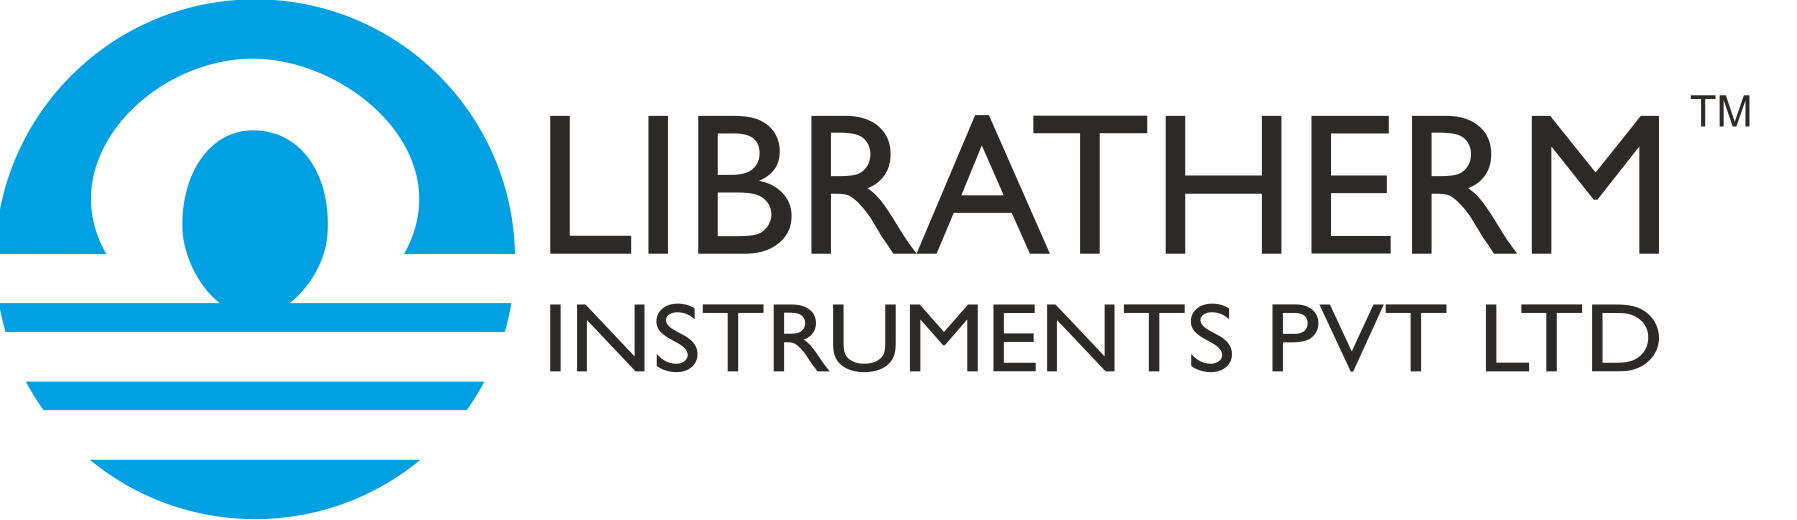 Libratherm instruments